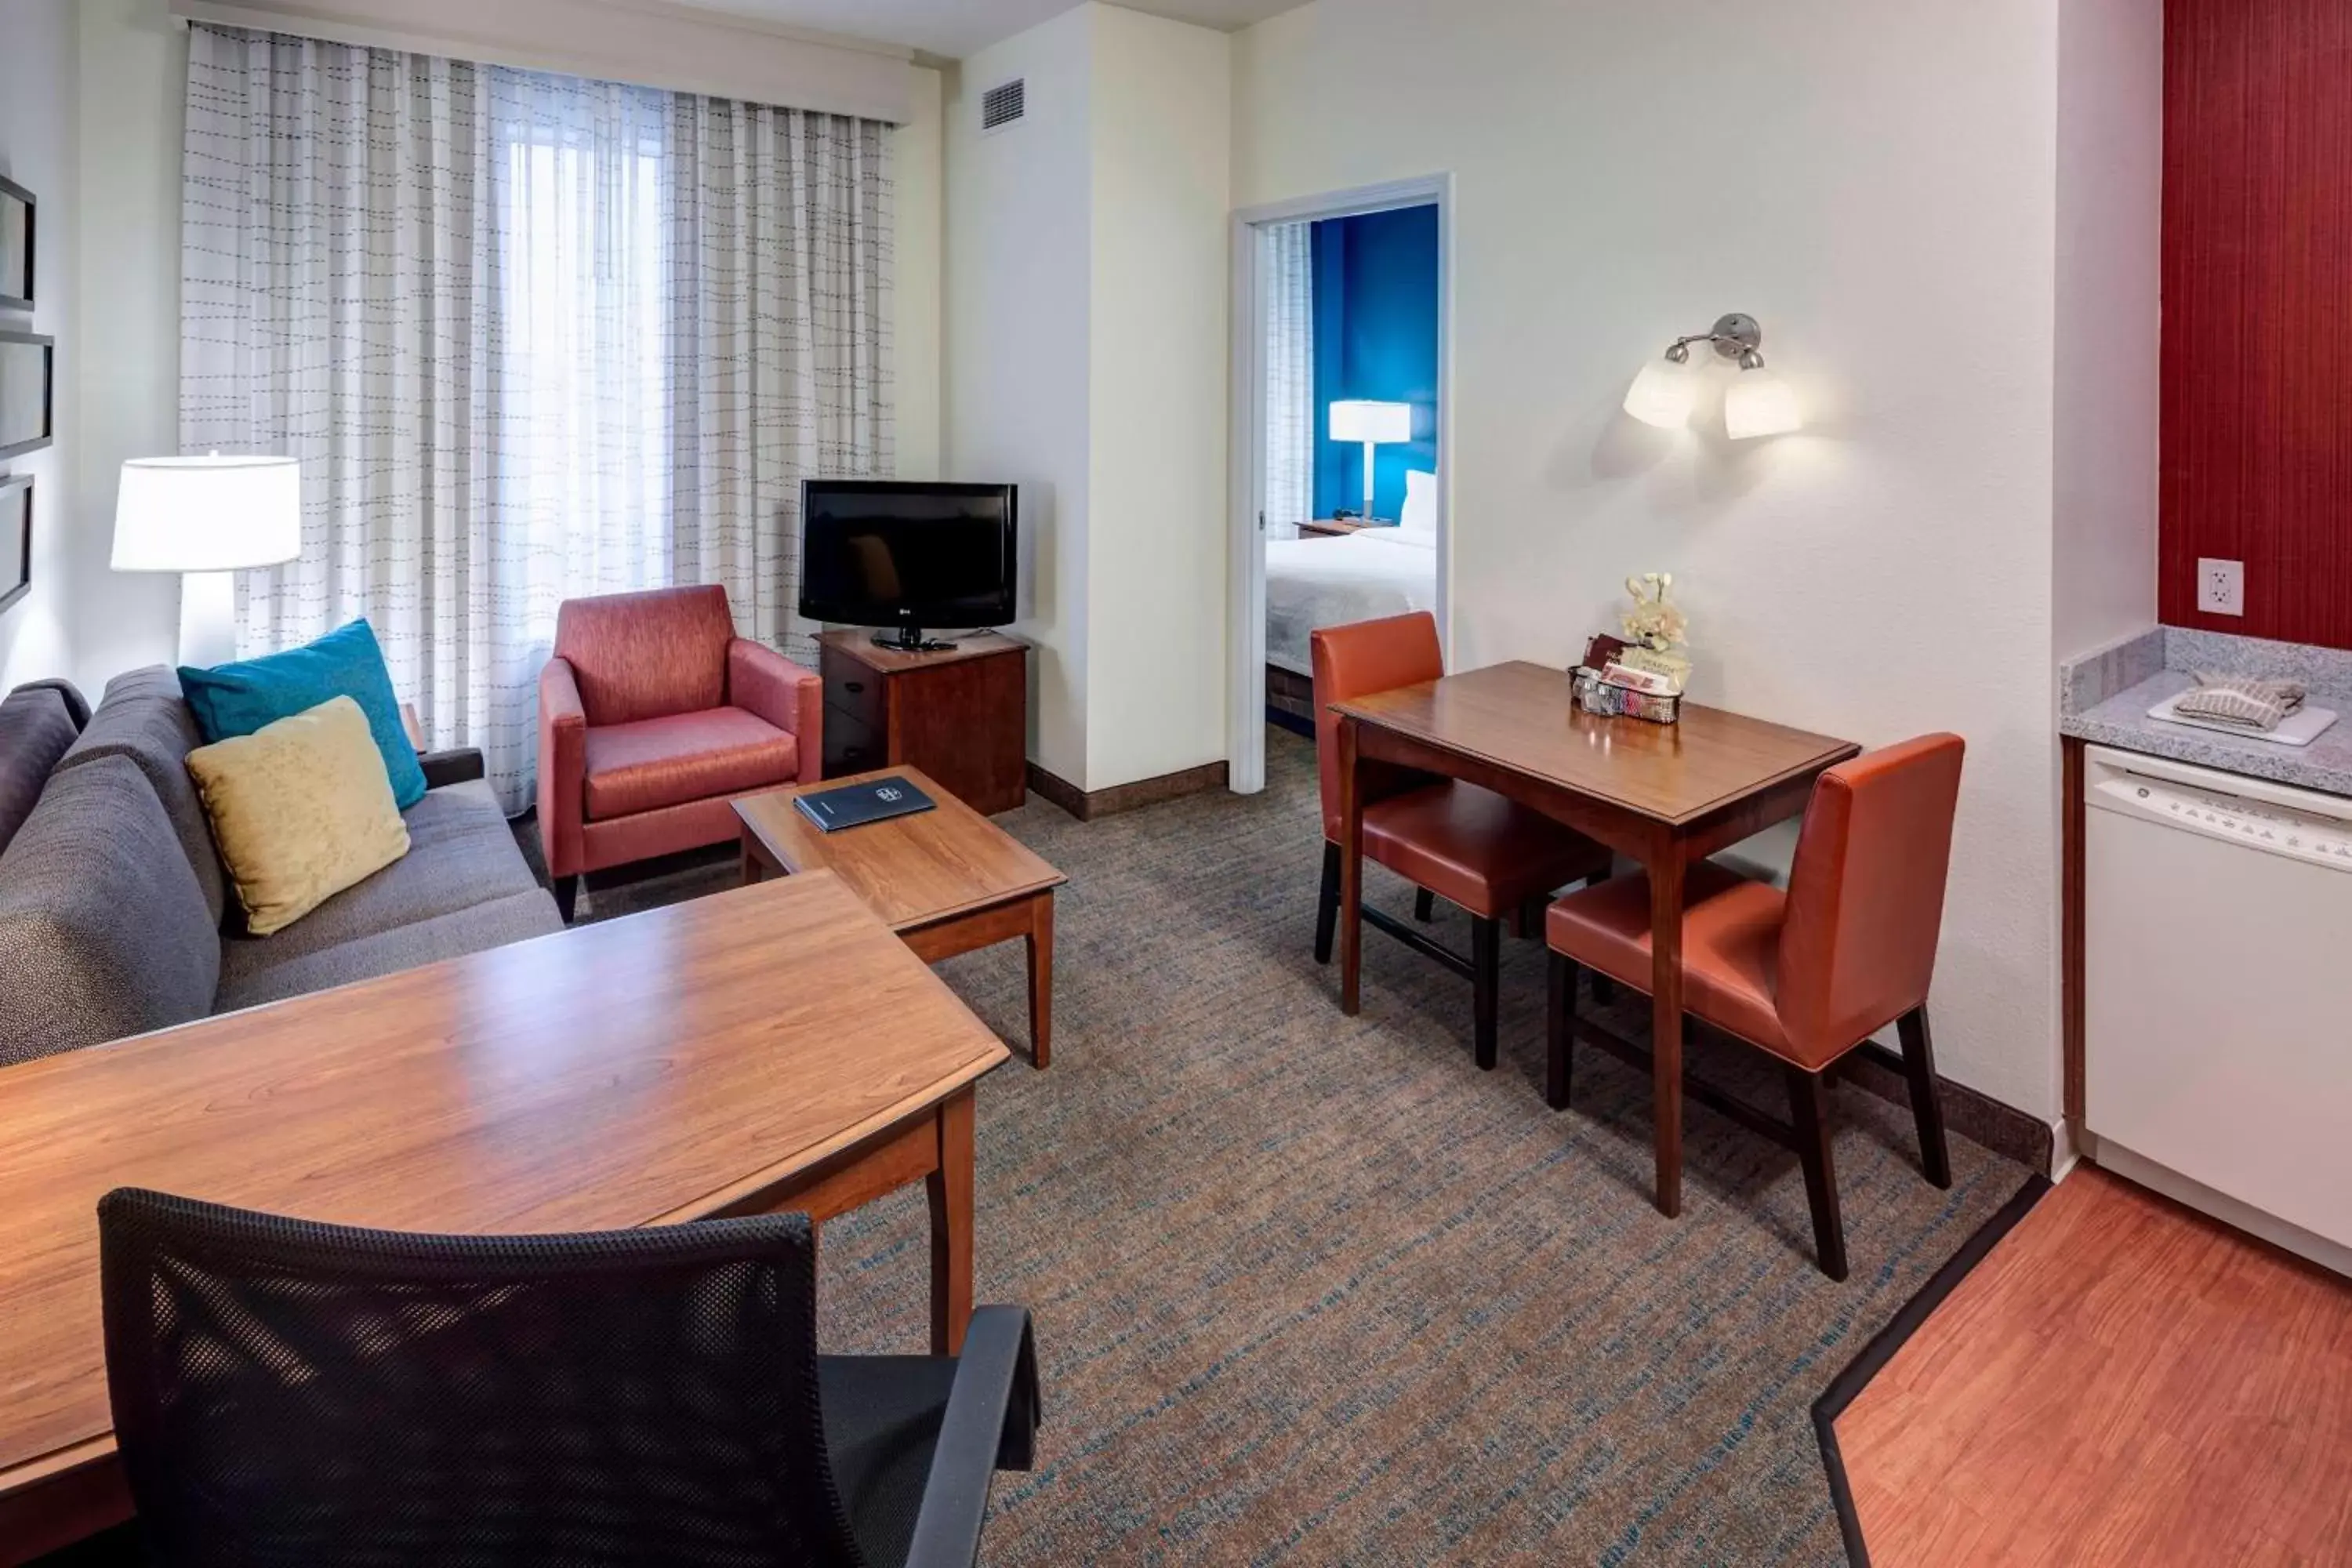 Bedroom, Dining Area in Residence Inn Houston West Energy Corridor